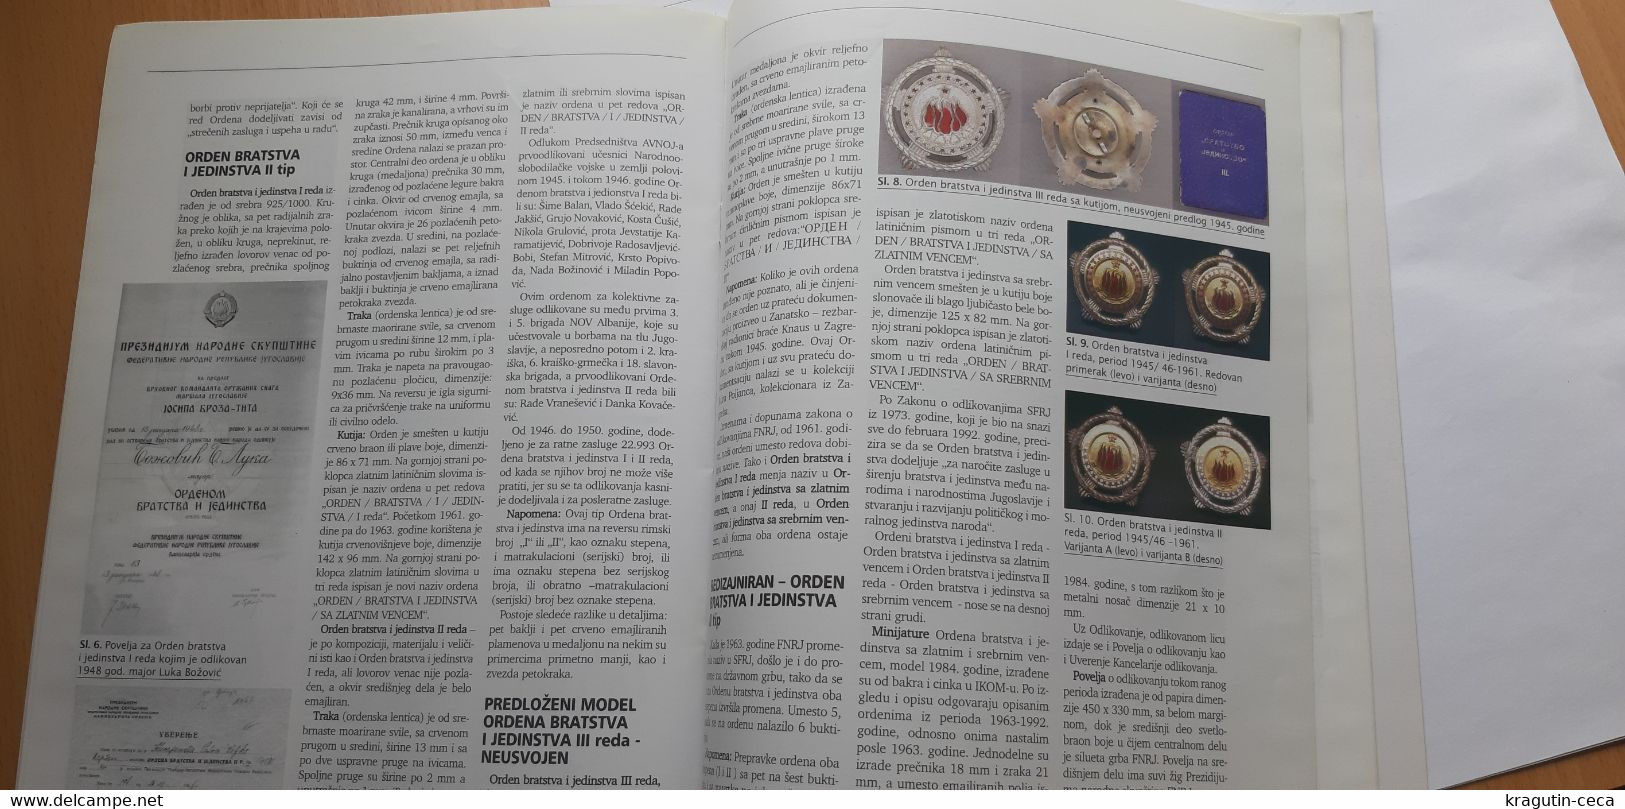 2006 Serbia Coin Numismatics magazine Yugoslavia KING NIKOLA MONTENEGRO medal order ROMAN antique banknote money